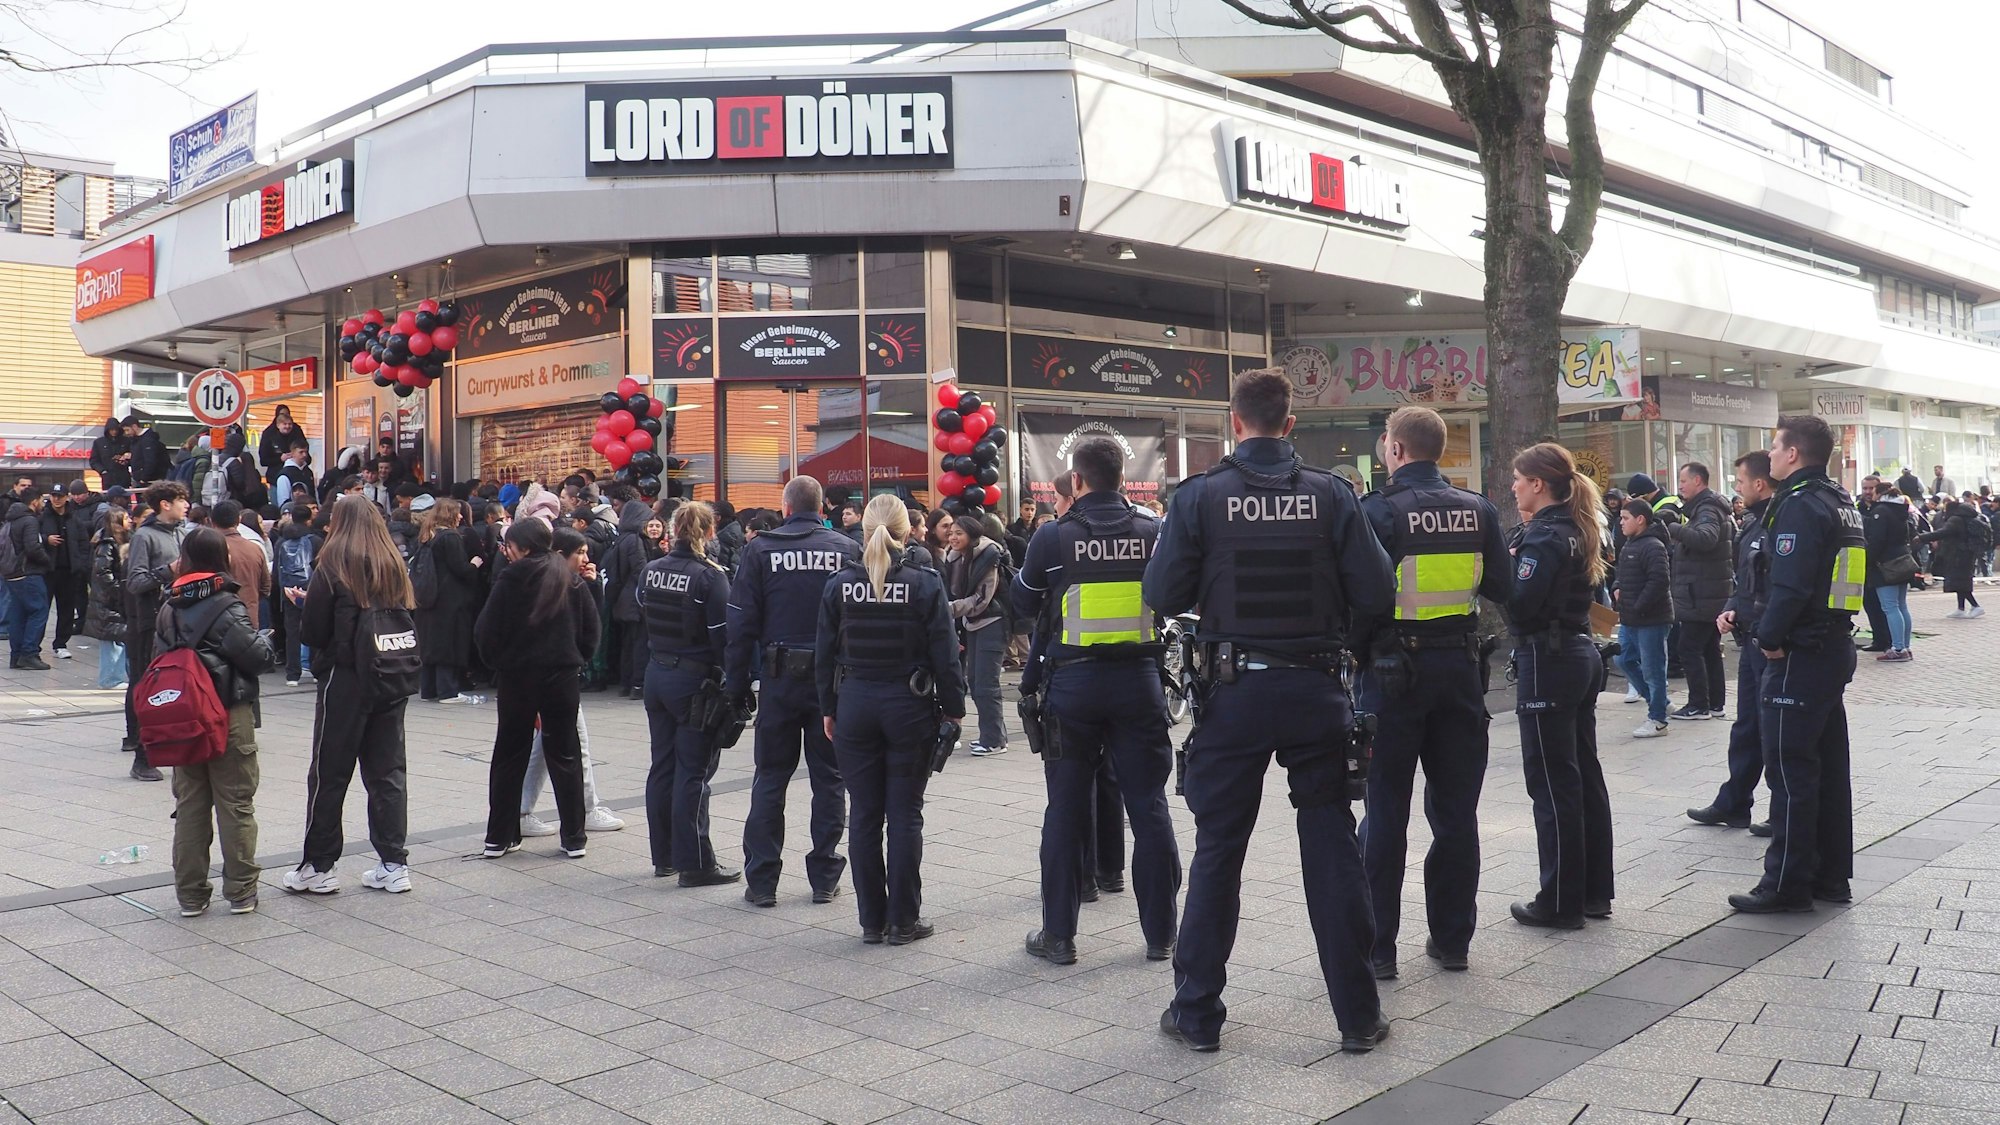 Der Dönerladen „Lord of Döner“ eröffnete im März 2023 in Wiesdorf mit dem Eröffnungsangebot „1 Cent für einen Döner“. Hunderte Menschen standen dafür an, Drängelei, Polizei und Ordnungsamt rückten in die Friedrich-Ebert-Straße an.